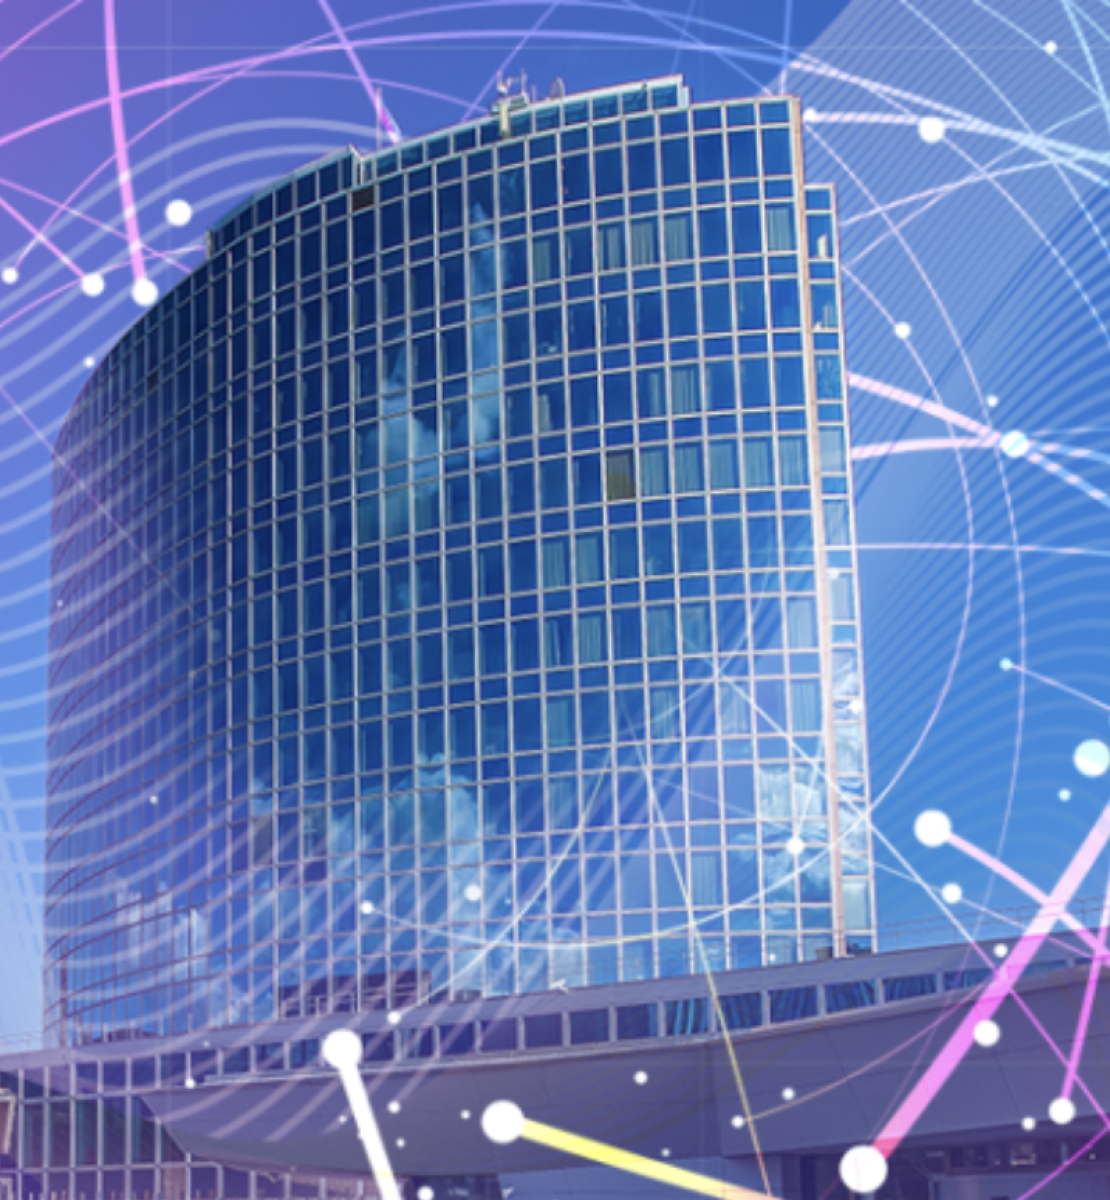 Стилизованное изображение здания ВОИС с нарисованным вокруг него цифровым глобусом. 